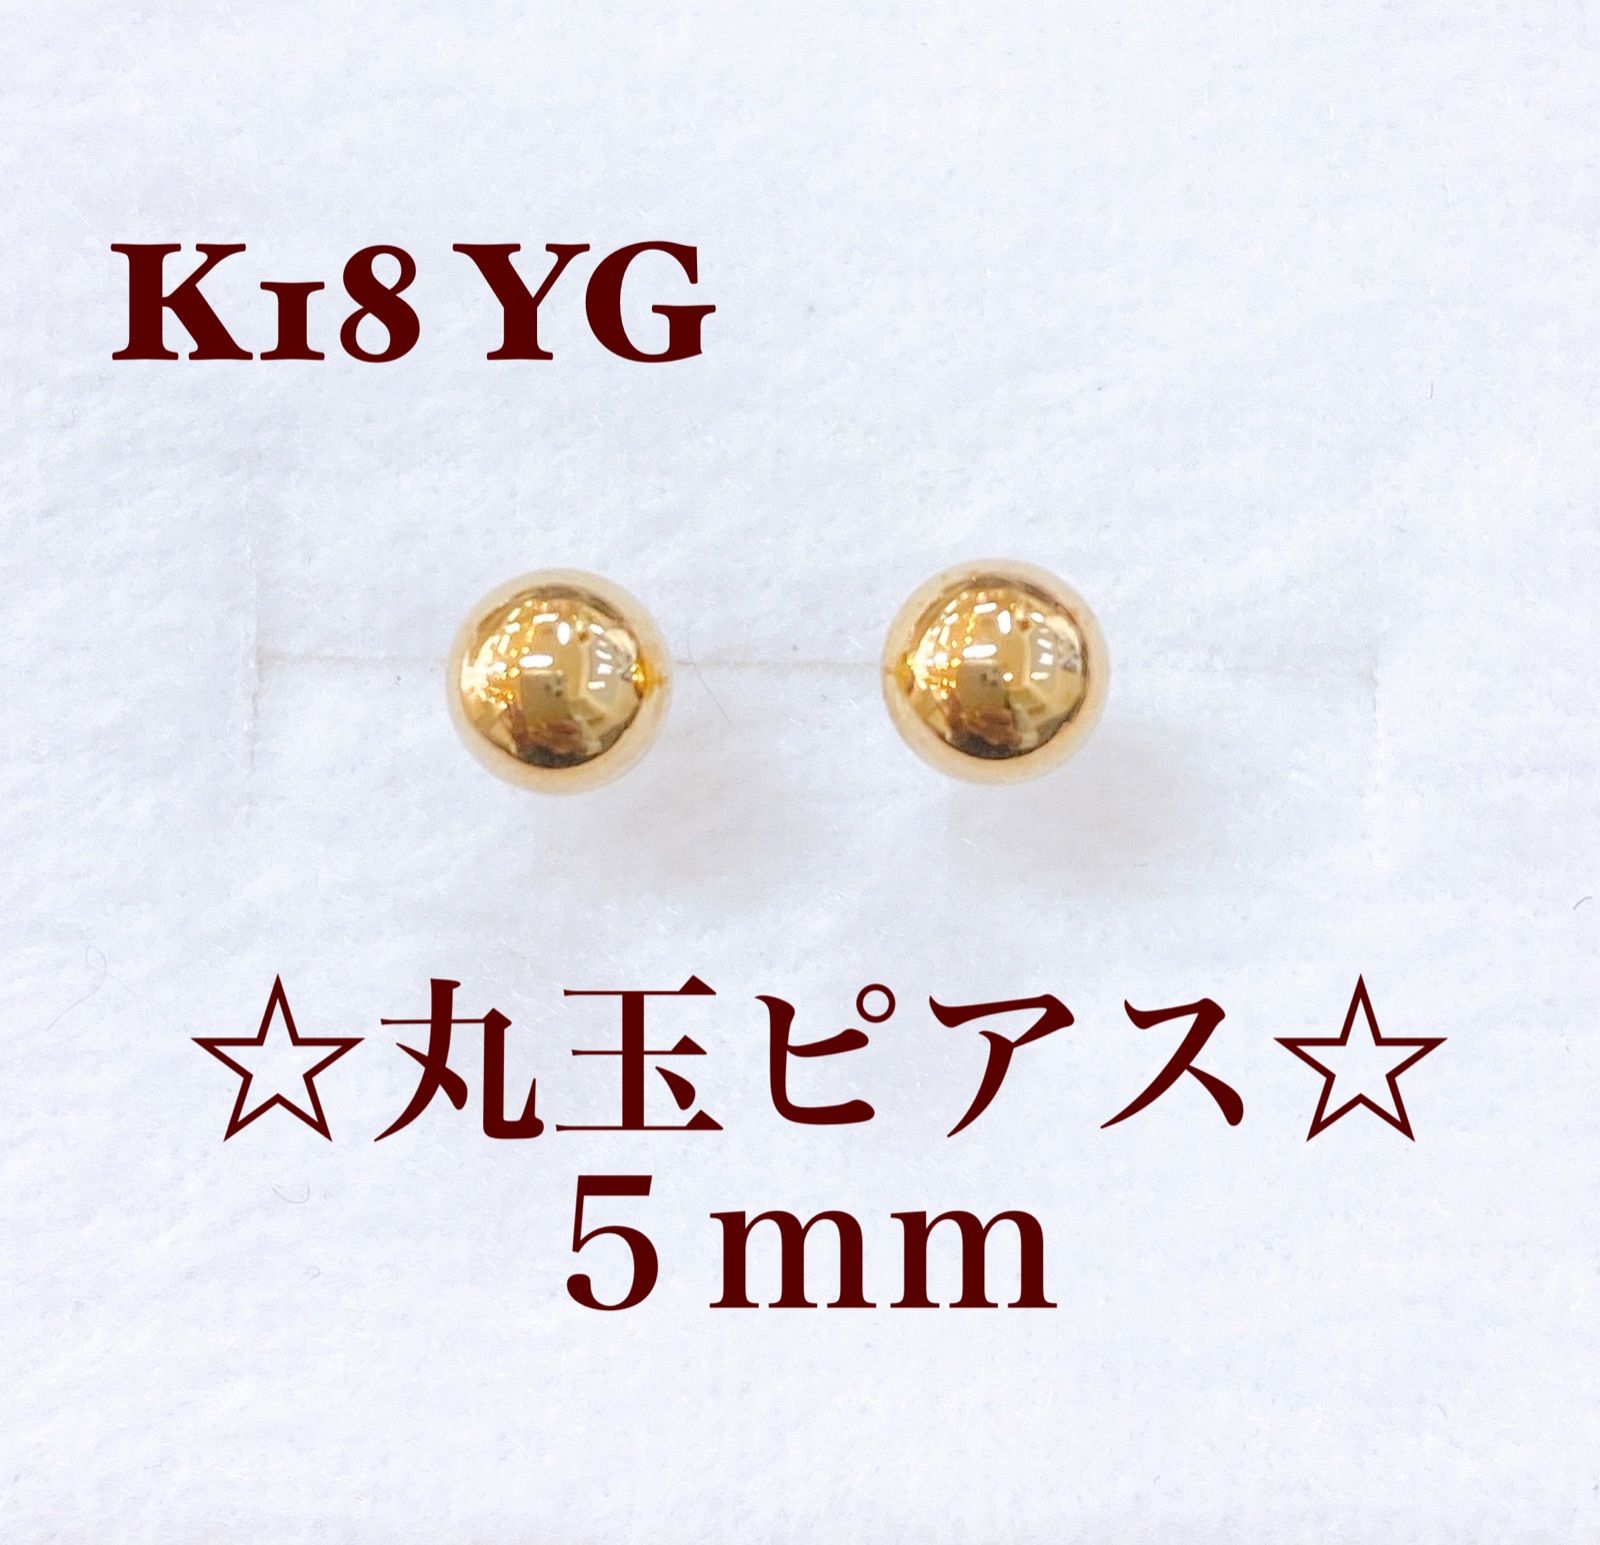 ❁︎K18 YG丸玉(5mm)ピアス❁︎